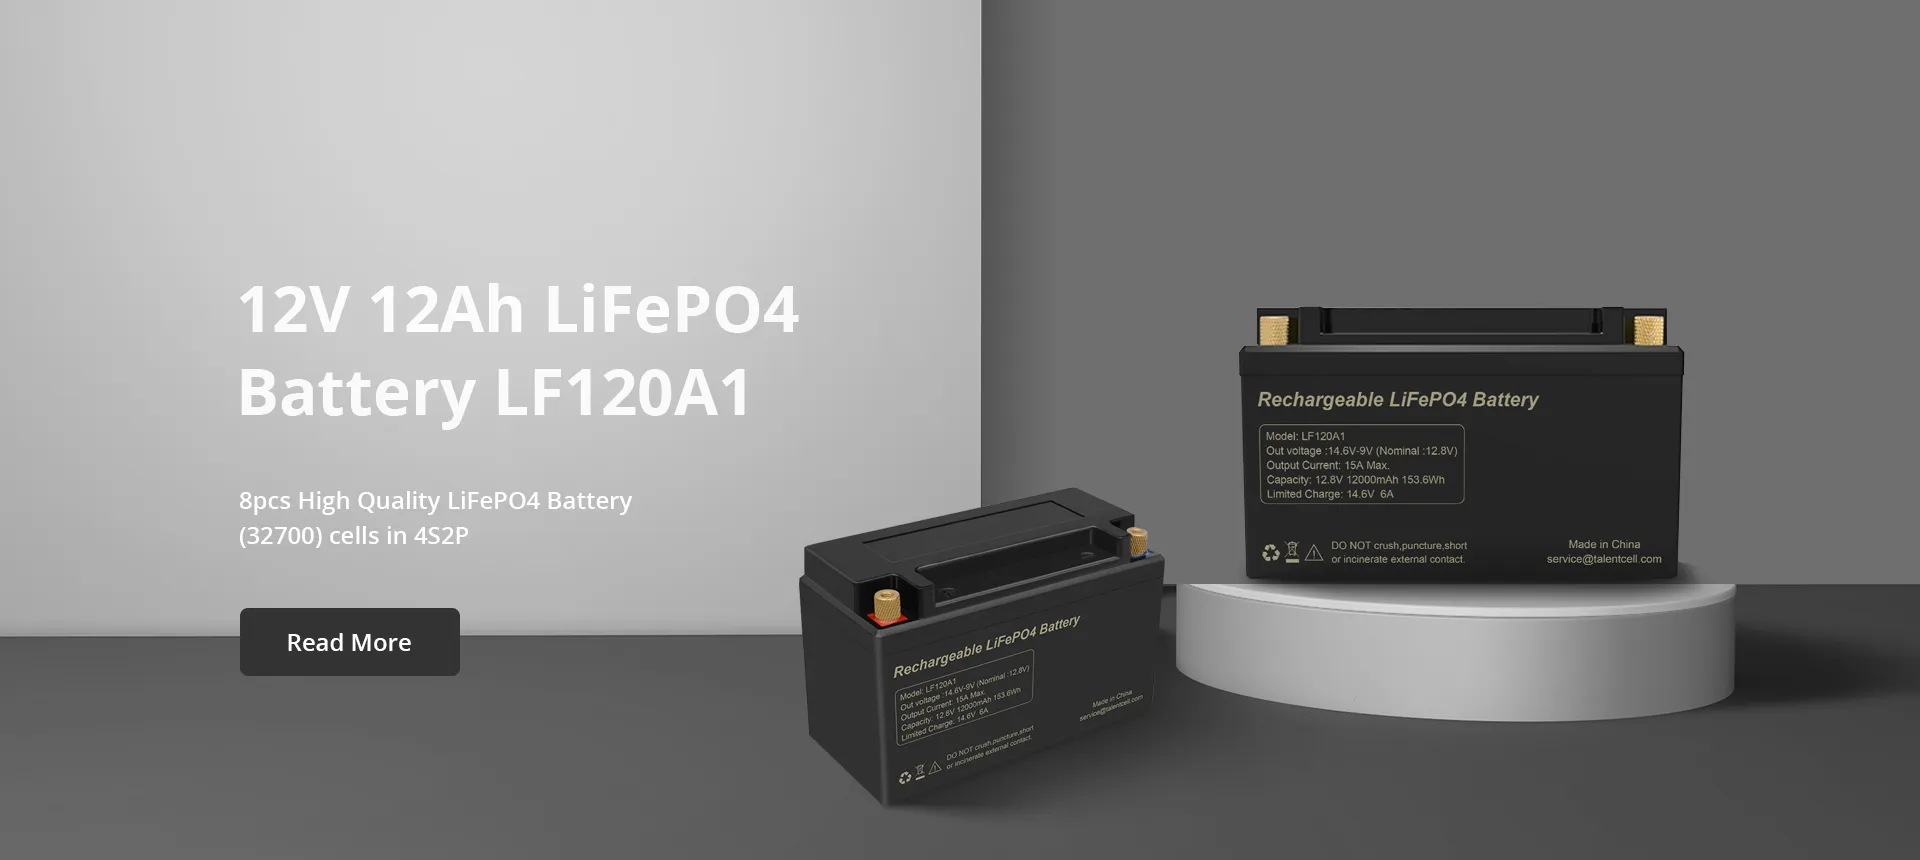 12V 12Ah LiFePO4 Battery LF120A1